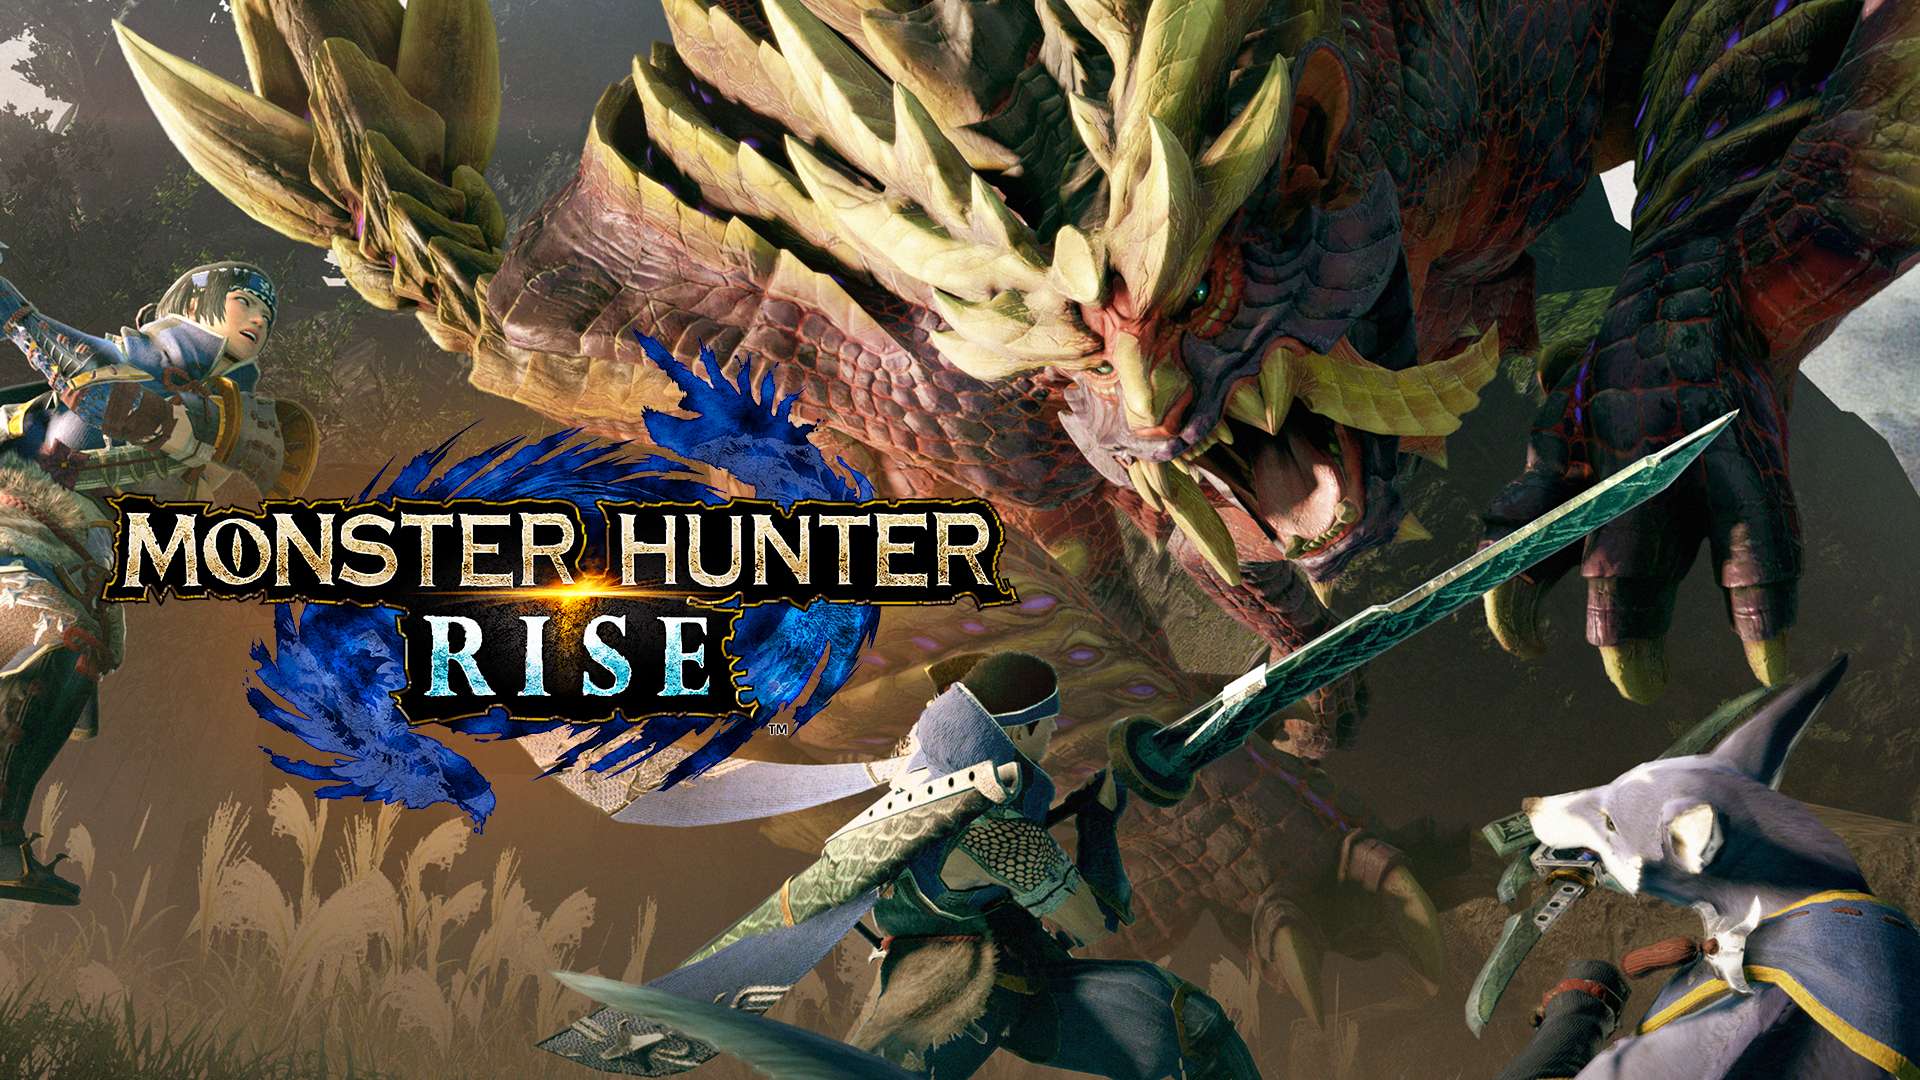 Monster Hunter Rise official artwork